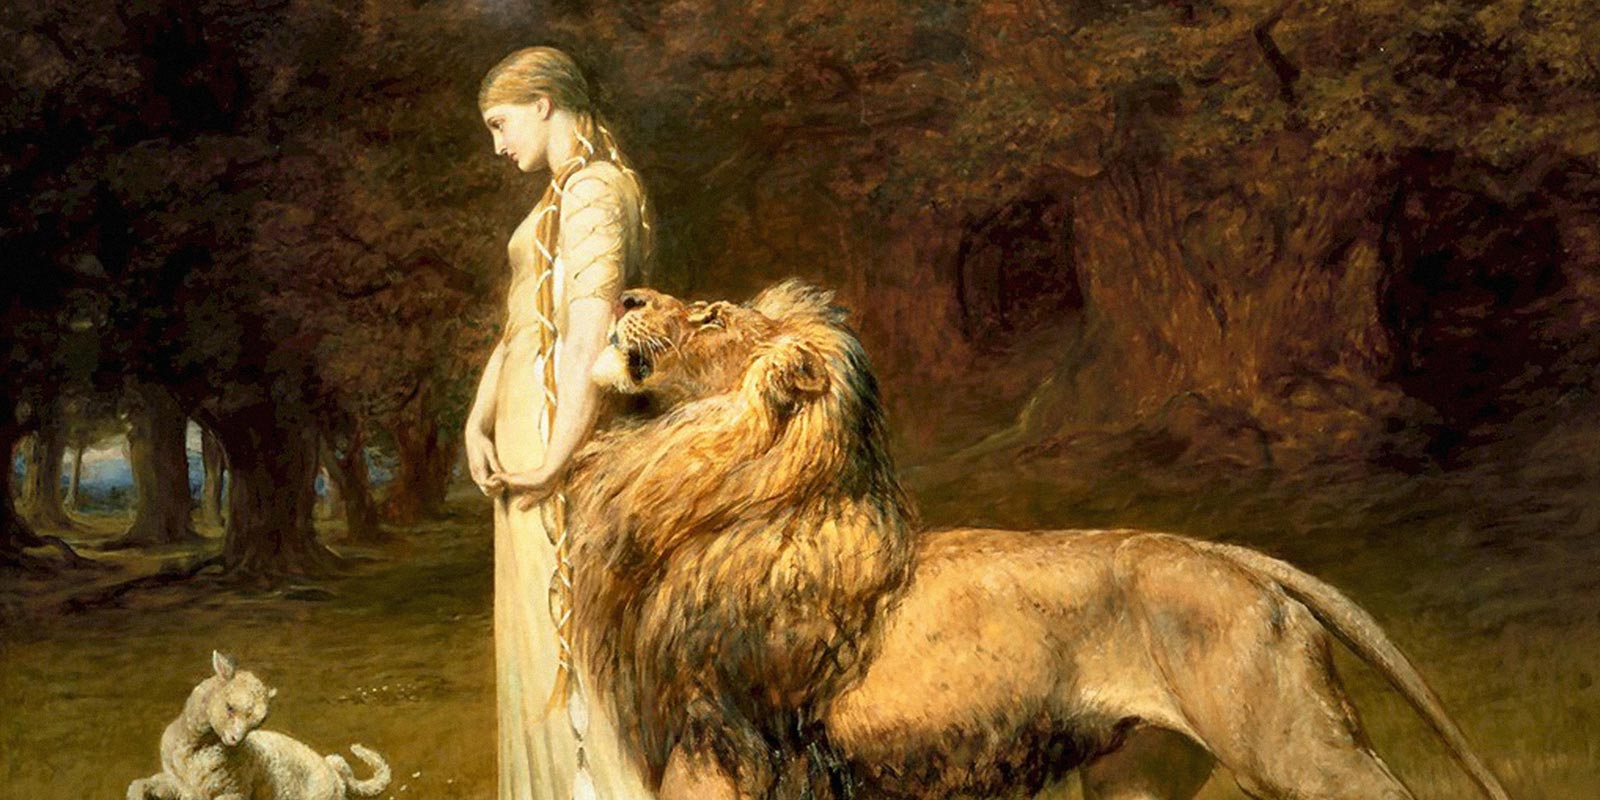 Una & the Lion